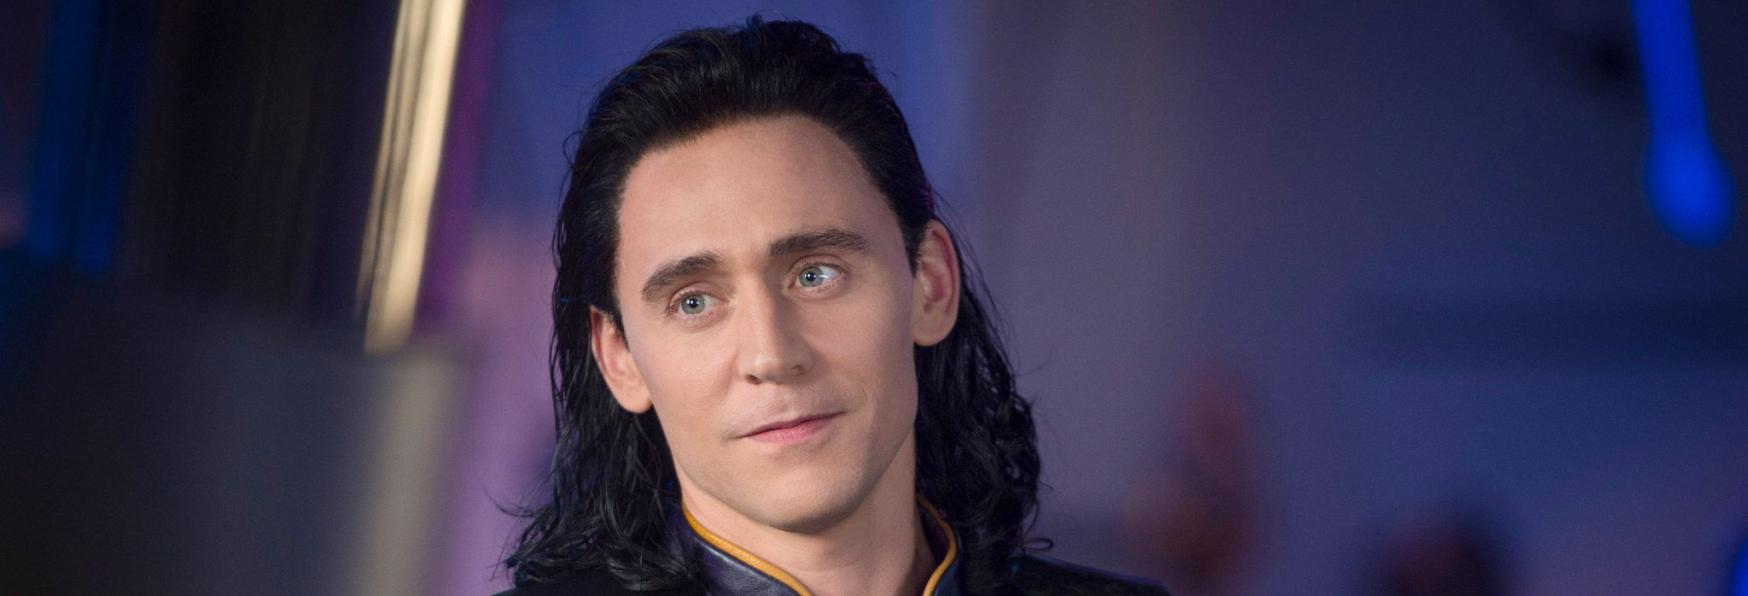 Loki: l'inedita Serie TV dei Marvel Studios si ispira a...I Teletubbies?!